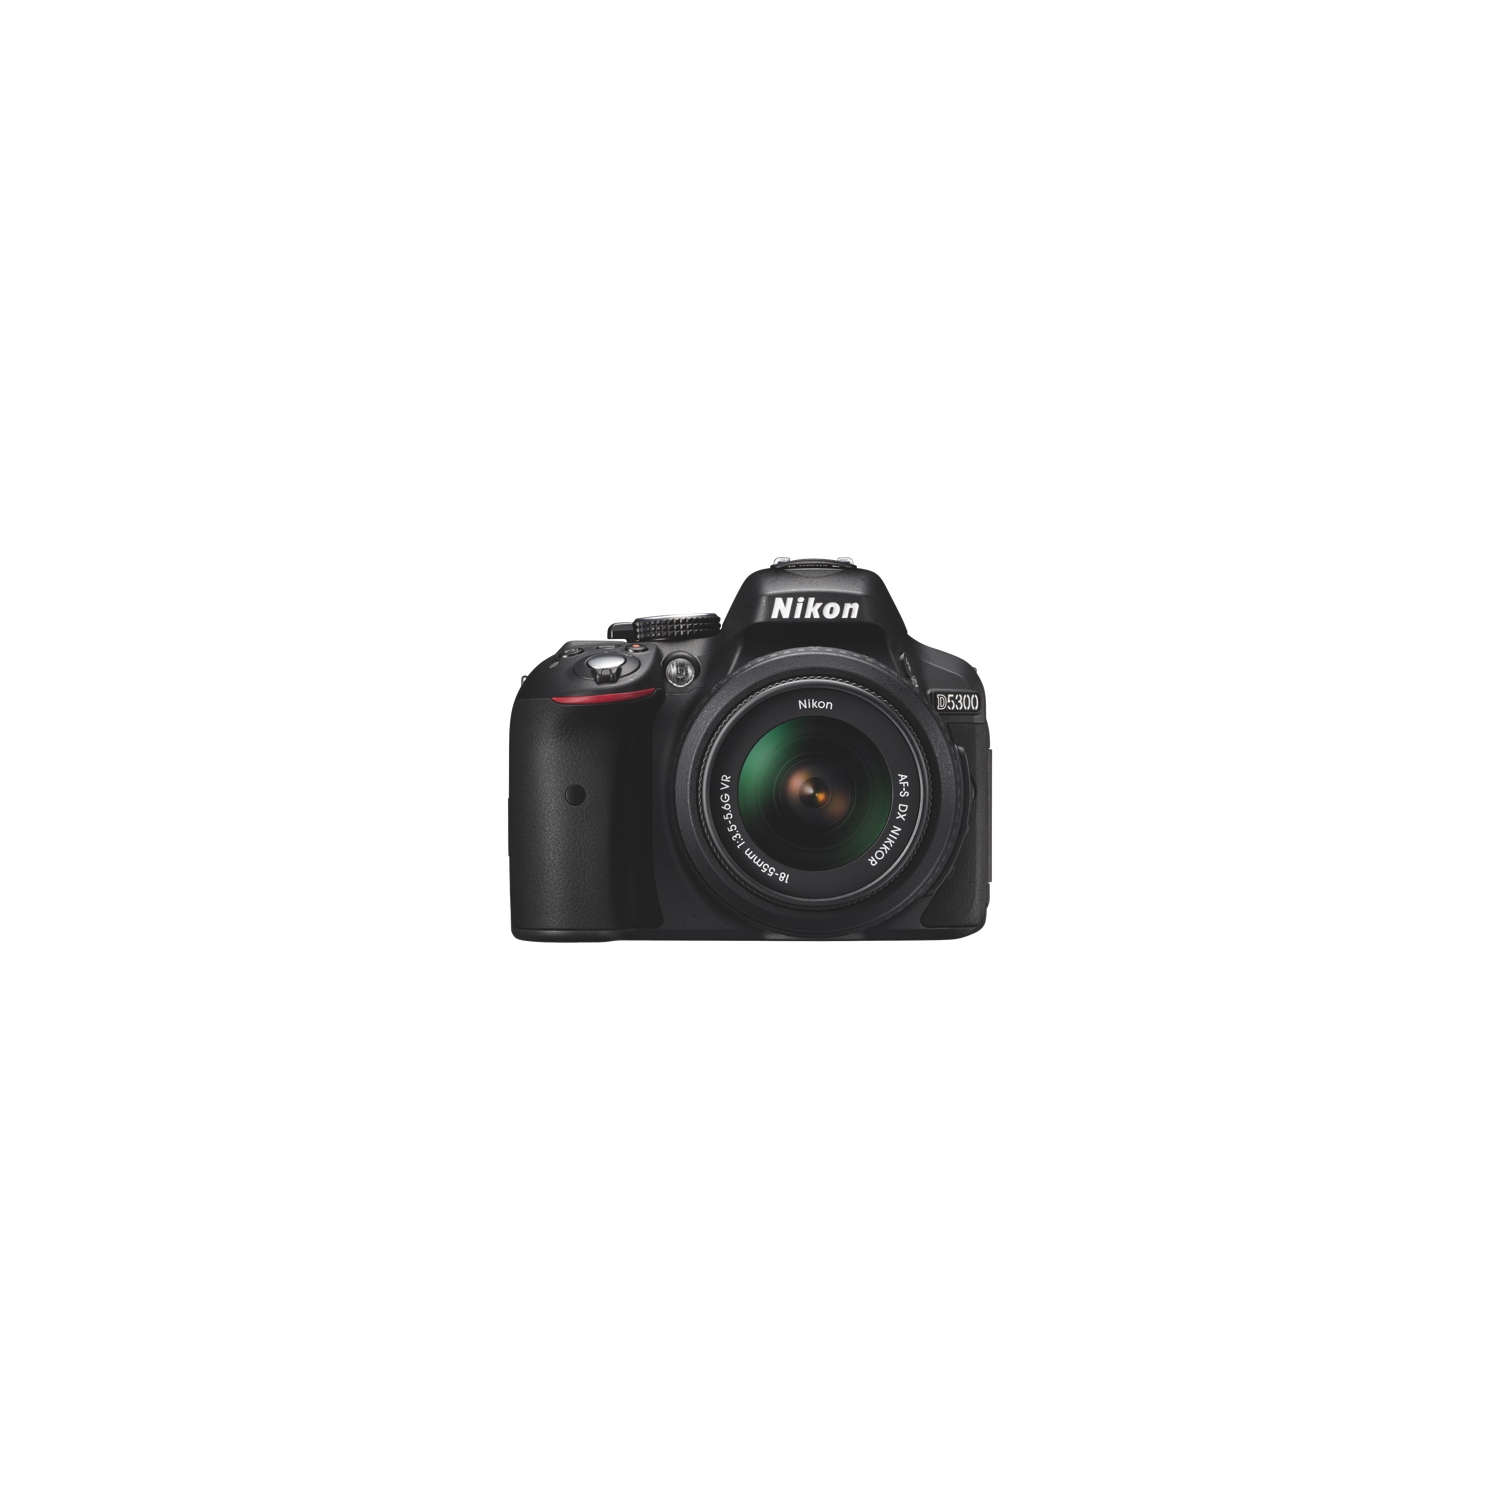 Refurbished (Fair) - Nikon D5300 DSLR Camera with AF-S DX NIKKOR 18-55mm VR II Lens Kit